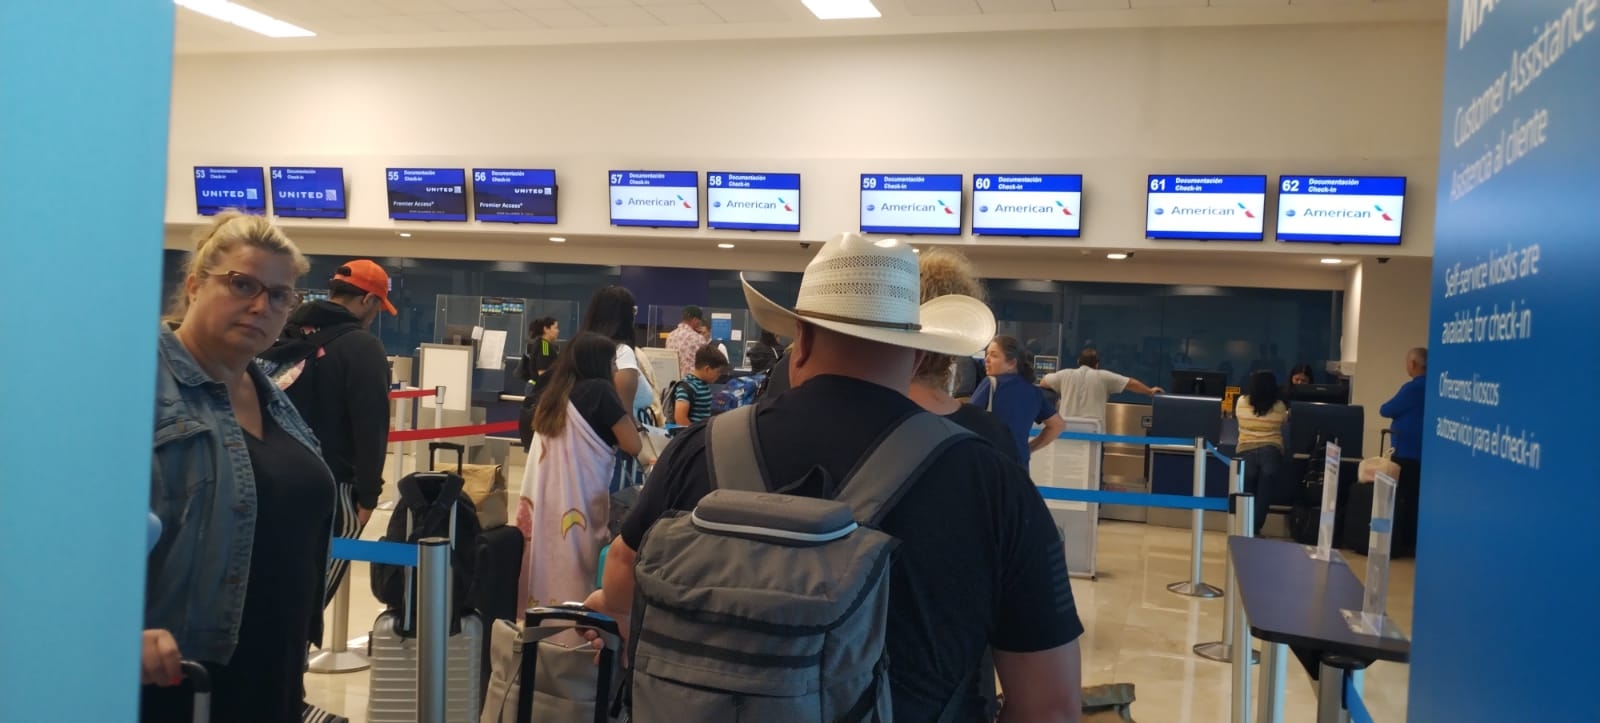 United deja en tierra a un pasajero del vuelo Mérida-Houston